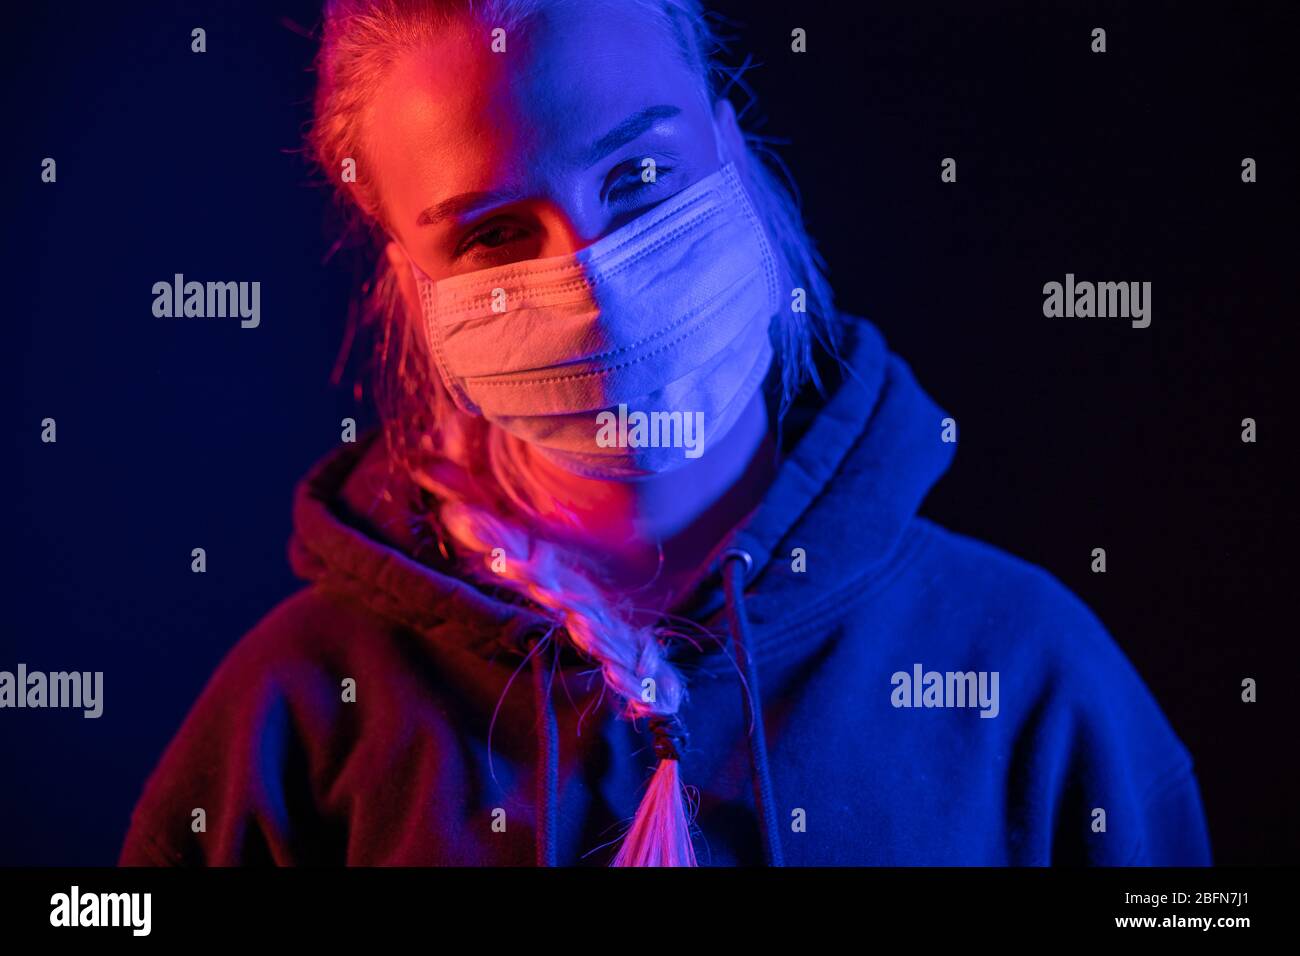 Erschöpft oder krank Frau in schützende Gesichtsmaske mit bunten Lichtern Stockfoto